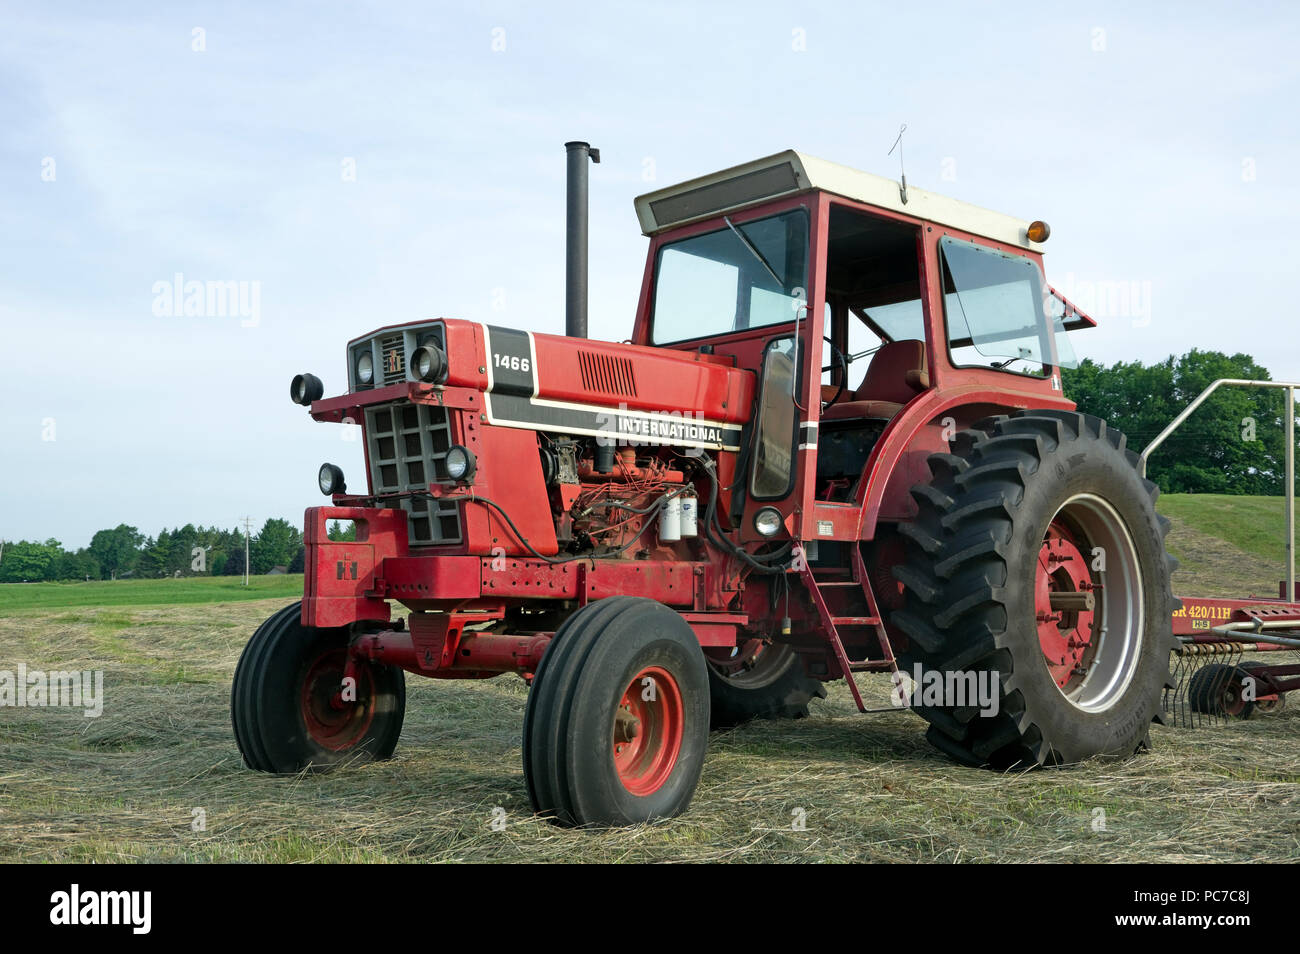 International Harvester model 1466 diesel Row Crop tractor in hay field Stock Photo